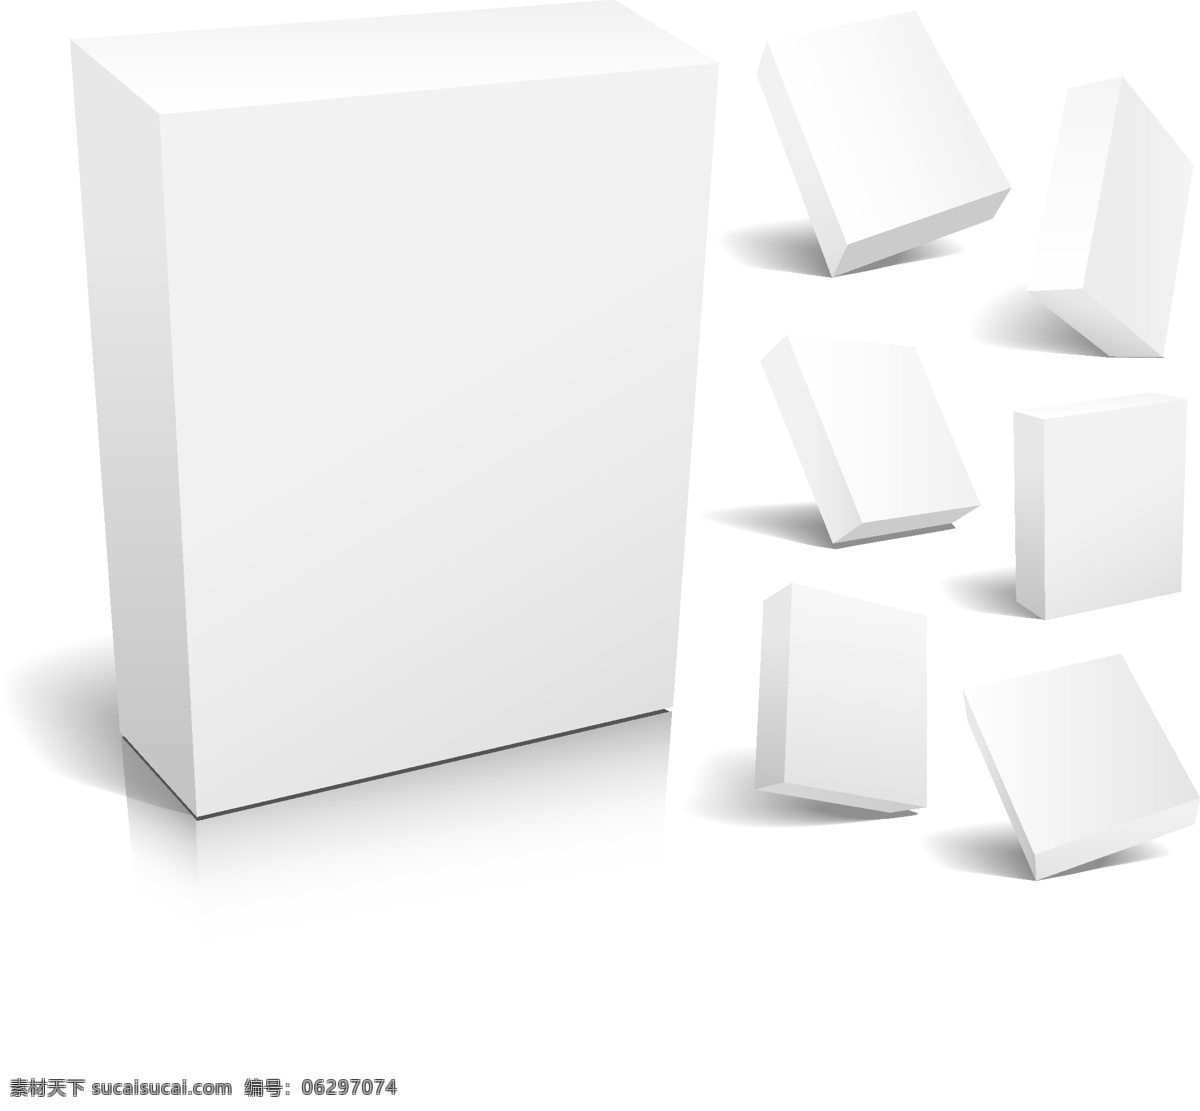 三维 盒 空白 模板 矢量 不同 角度 包装盒 软件包 矢量图 其他矢量图